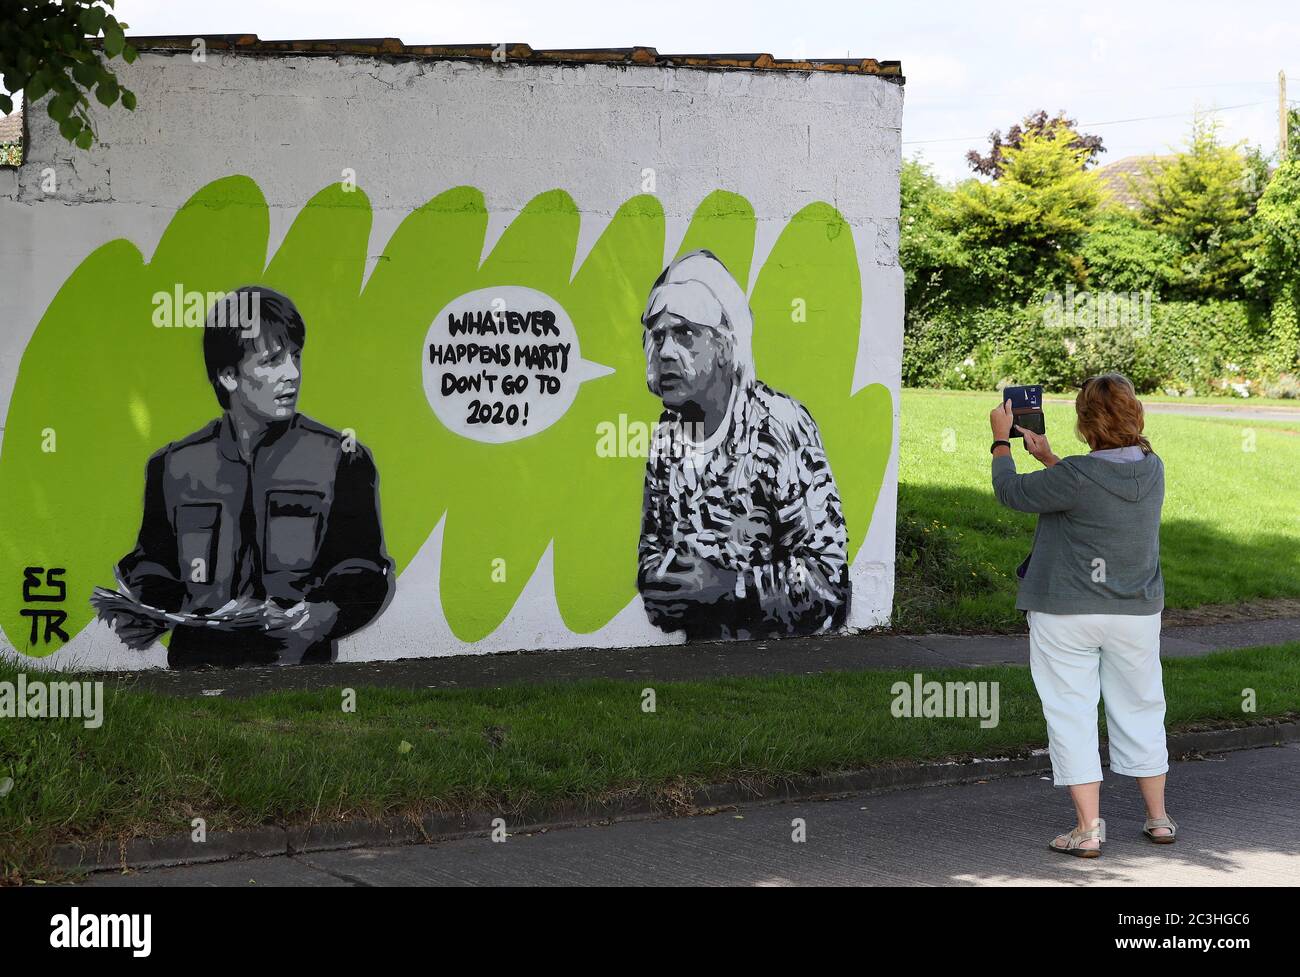 Eine Frau hält an, um das Wandbild der irischen Künstlerin Emmalene Blake mit den Figuren Marty McFly und Doc Brown aus dem Kult-80er-Film "Zurück in die Zukunft" in South Dublin zu fotografieren. Dies ist das neueste Coronavirus-Wandbild des Künstlers in Dublin während der Pandemie. Weitere Künstler waren Dua Lipa, Robyn und Cardi B. Stockfoto